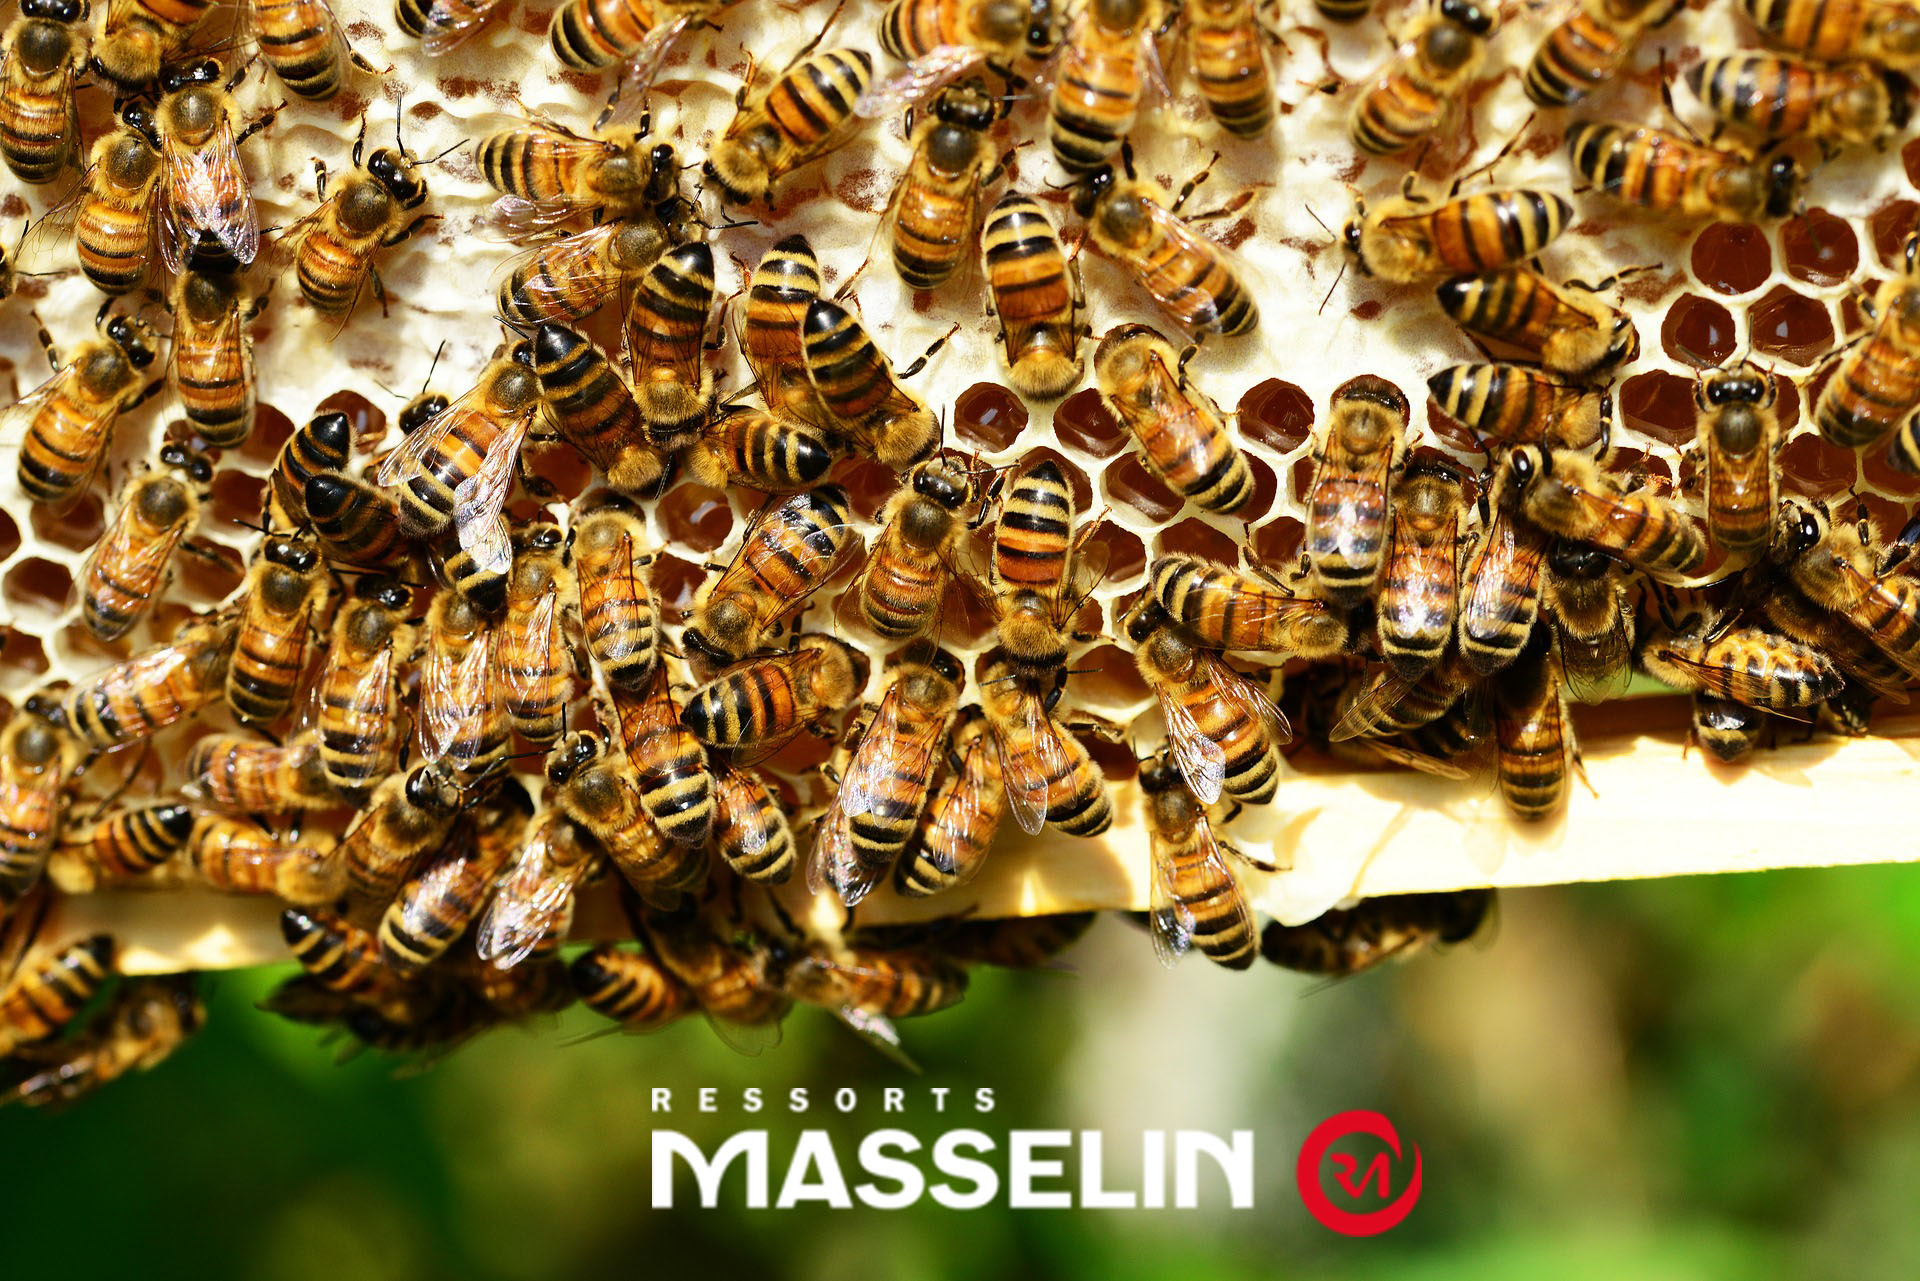 Entretien d'Olivier Masselin au sujet des ruches